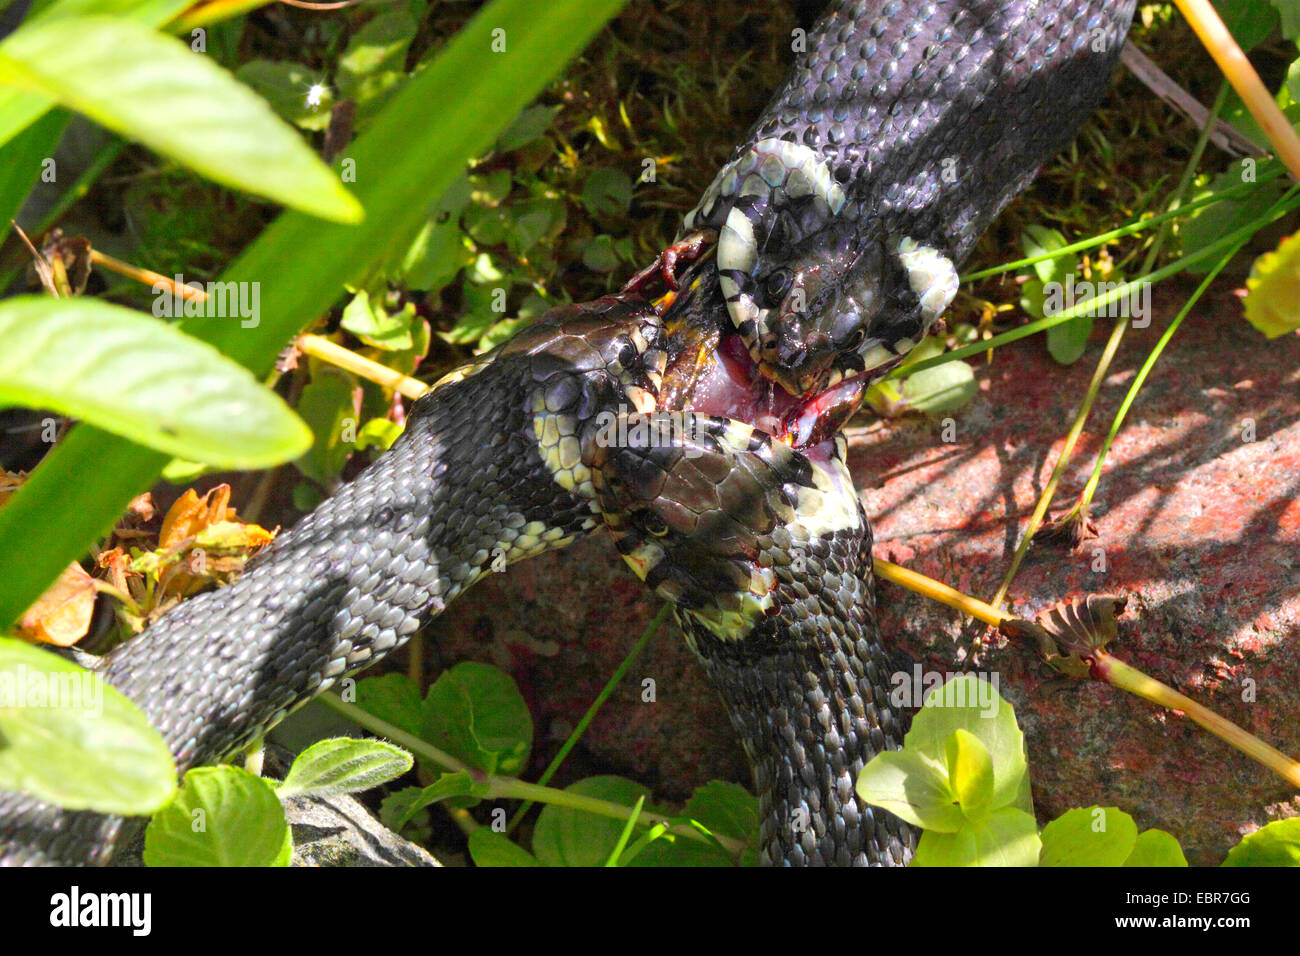 Couleuvre à collier (Natrix natrix), série photo 2 trois serpents, luttant pour une grenouille, Allemagne, Mecklembourg-Poméranie-Occidentale Banque D'Images